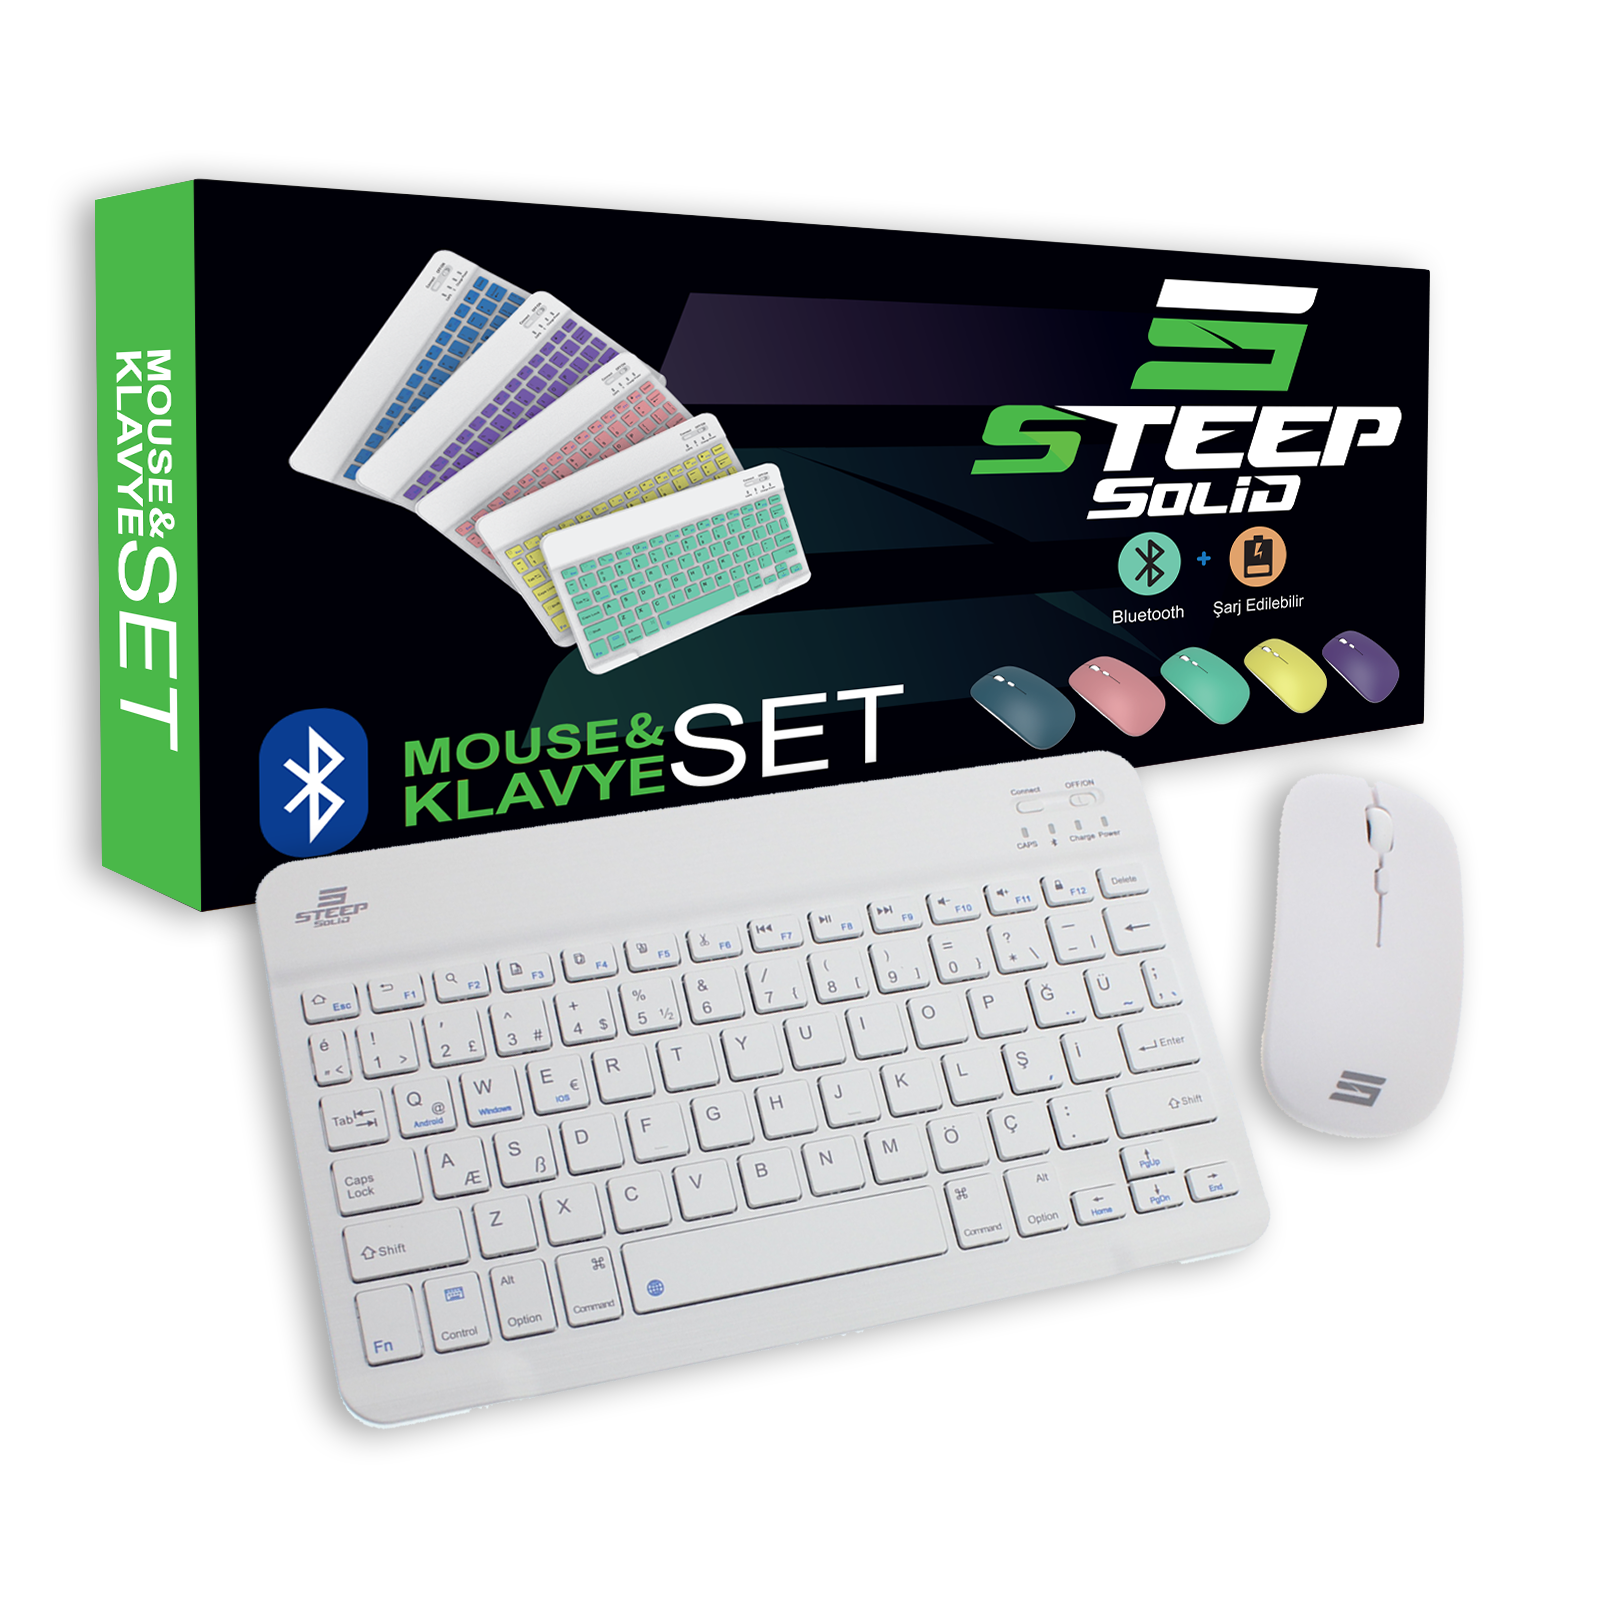 Steep Solid Magic Şarjlı Bluetooth Klavye - Mouse Set